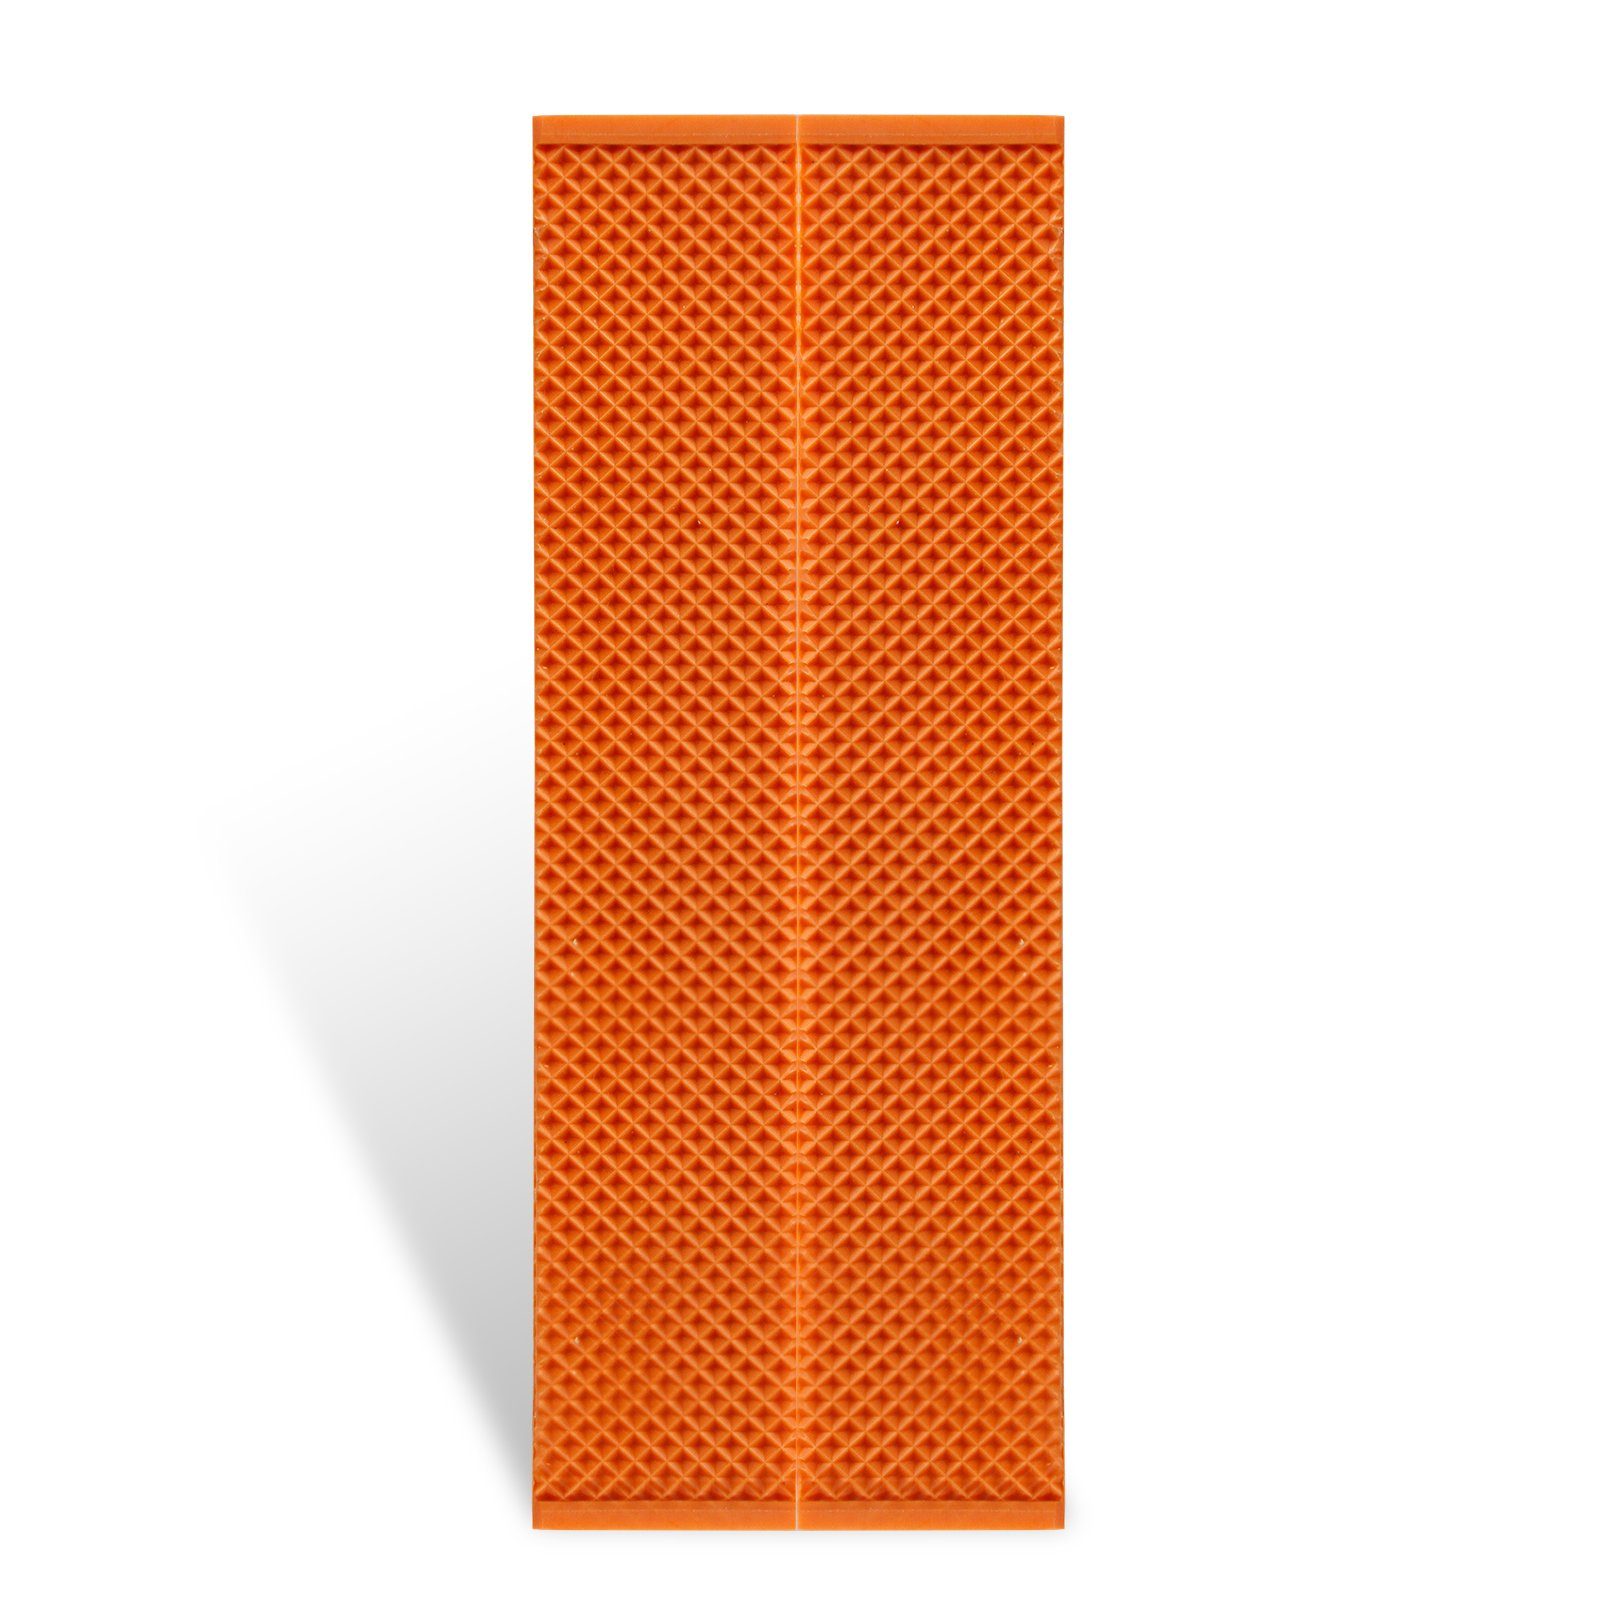 CCLIFE Schraubstock-Schutzbacken Schraubstock mit Breite Magnet 150mm 2 tlg orange / 110mm